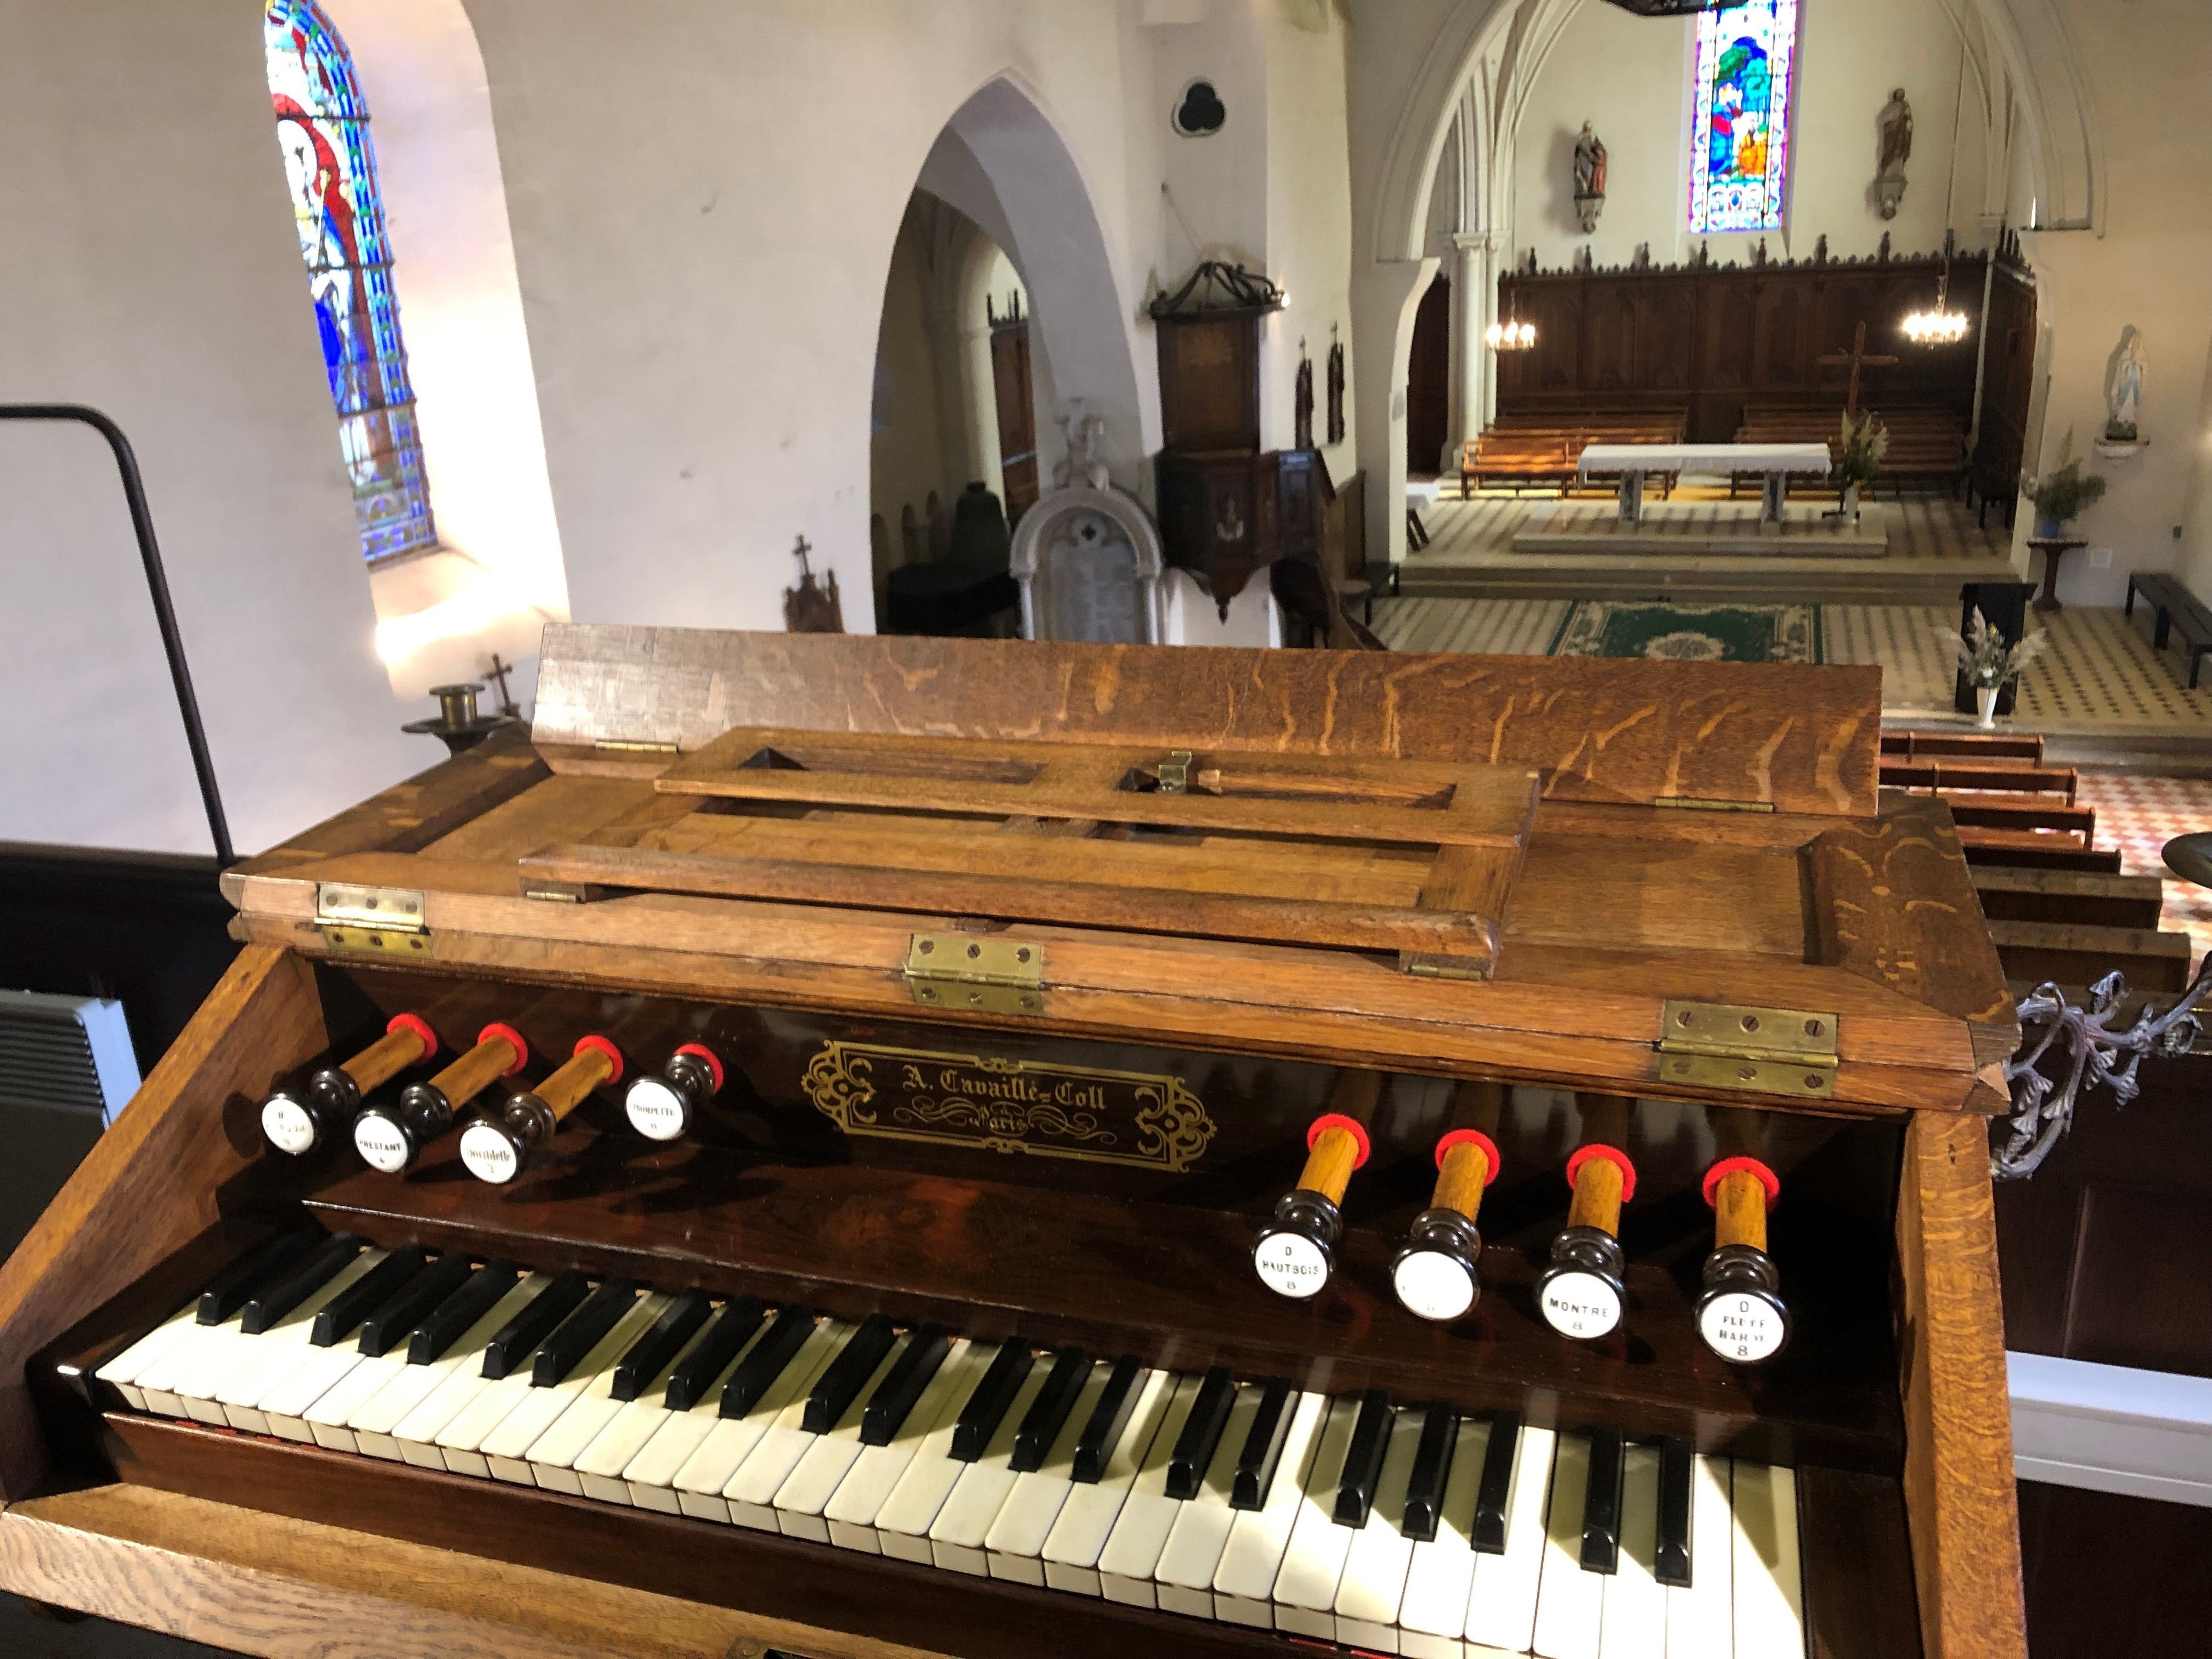 L'église Saint-Béat dispose d'un orgue construit en 1878 pour celle d'Enghien-les-Bains (Val-d'Oise). Mais l'instrument montre des signes d'usure inquiétants. LP/Sébastien Birden